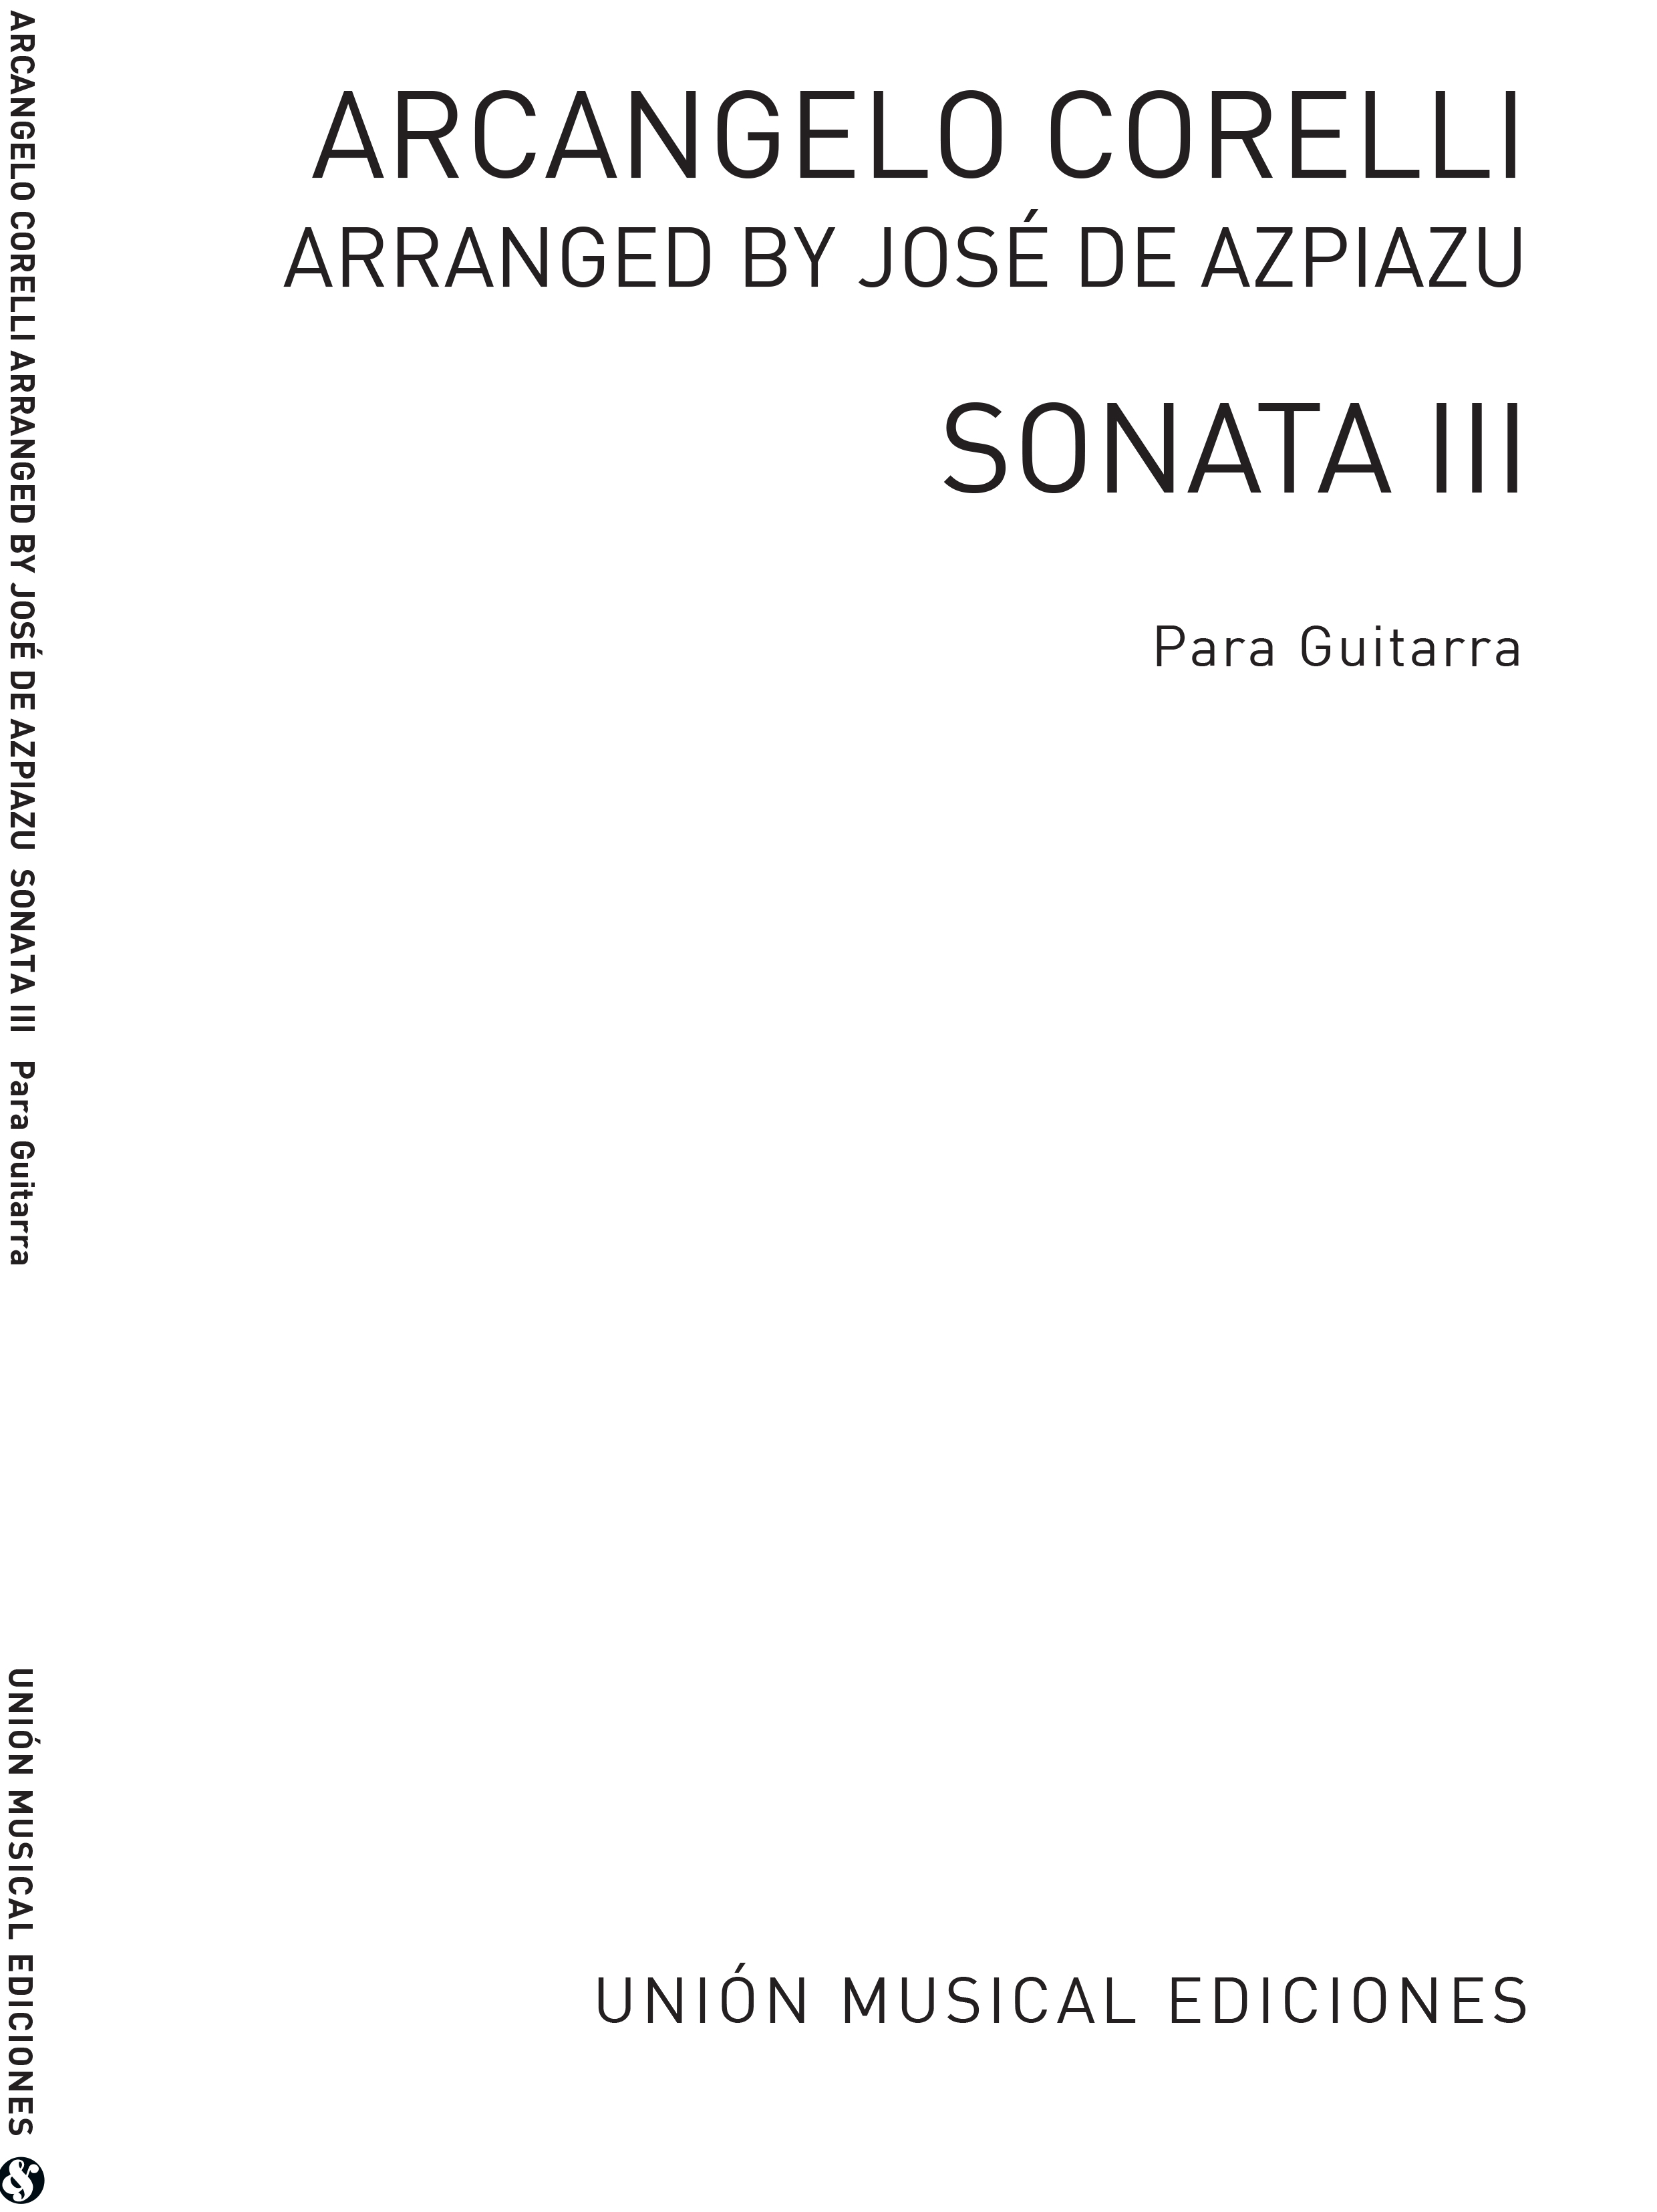 Arcangelo Corelli: Sonata III (Azpiazu): Guitar